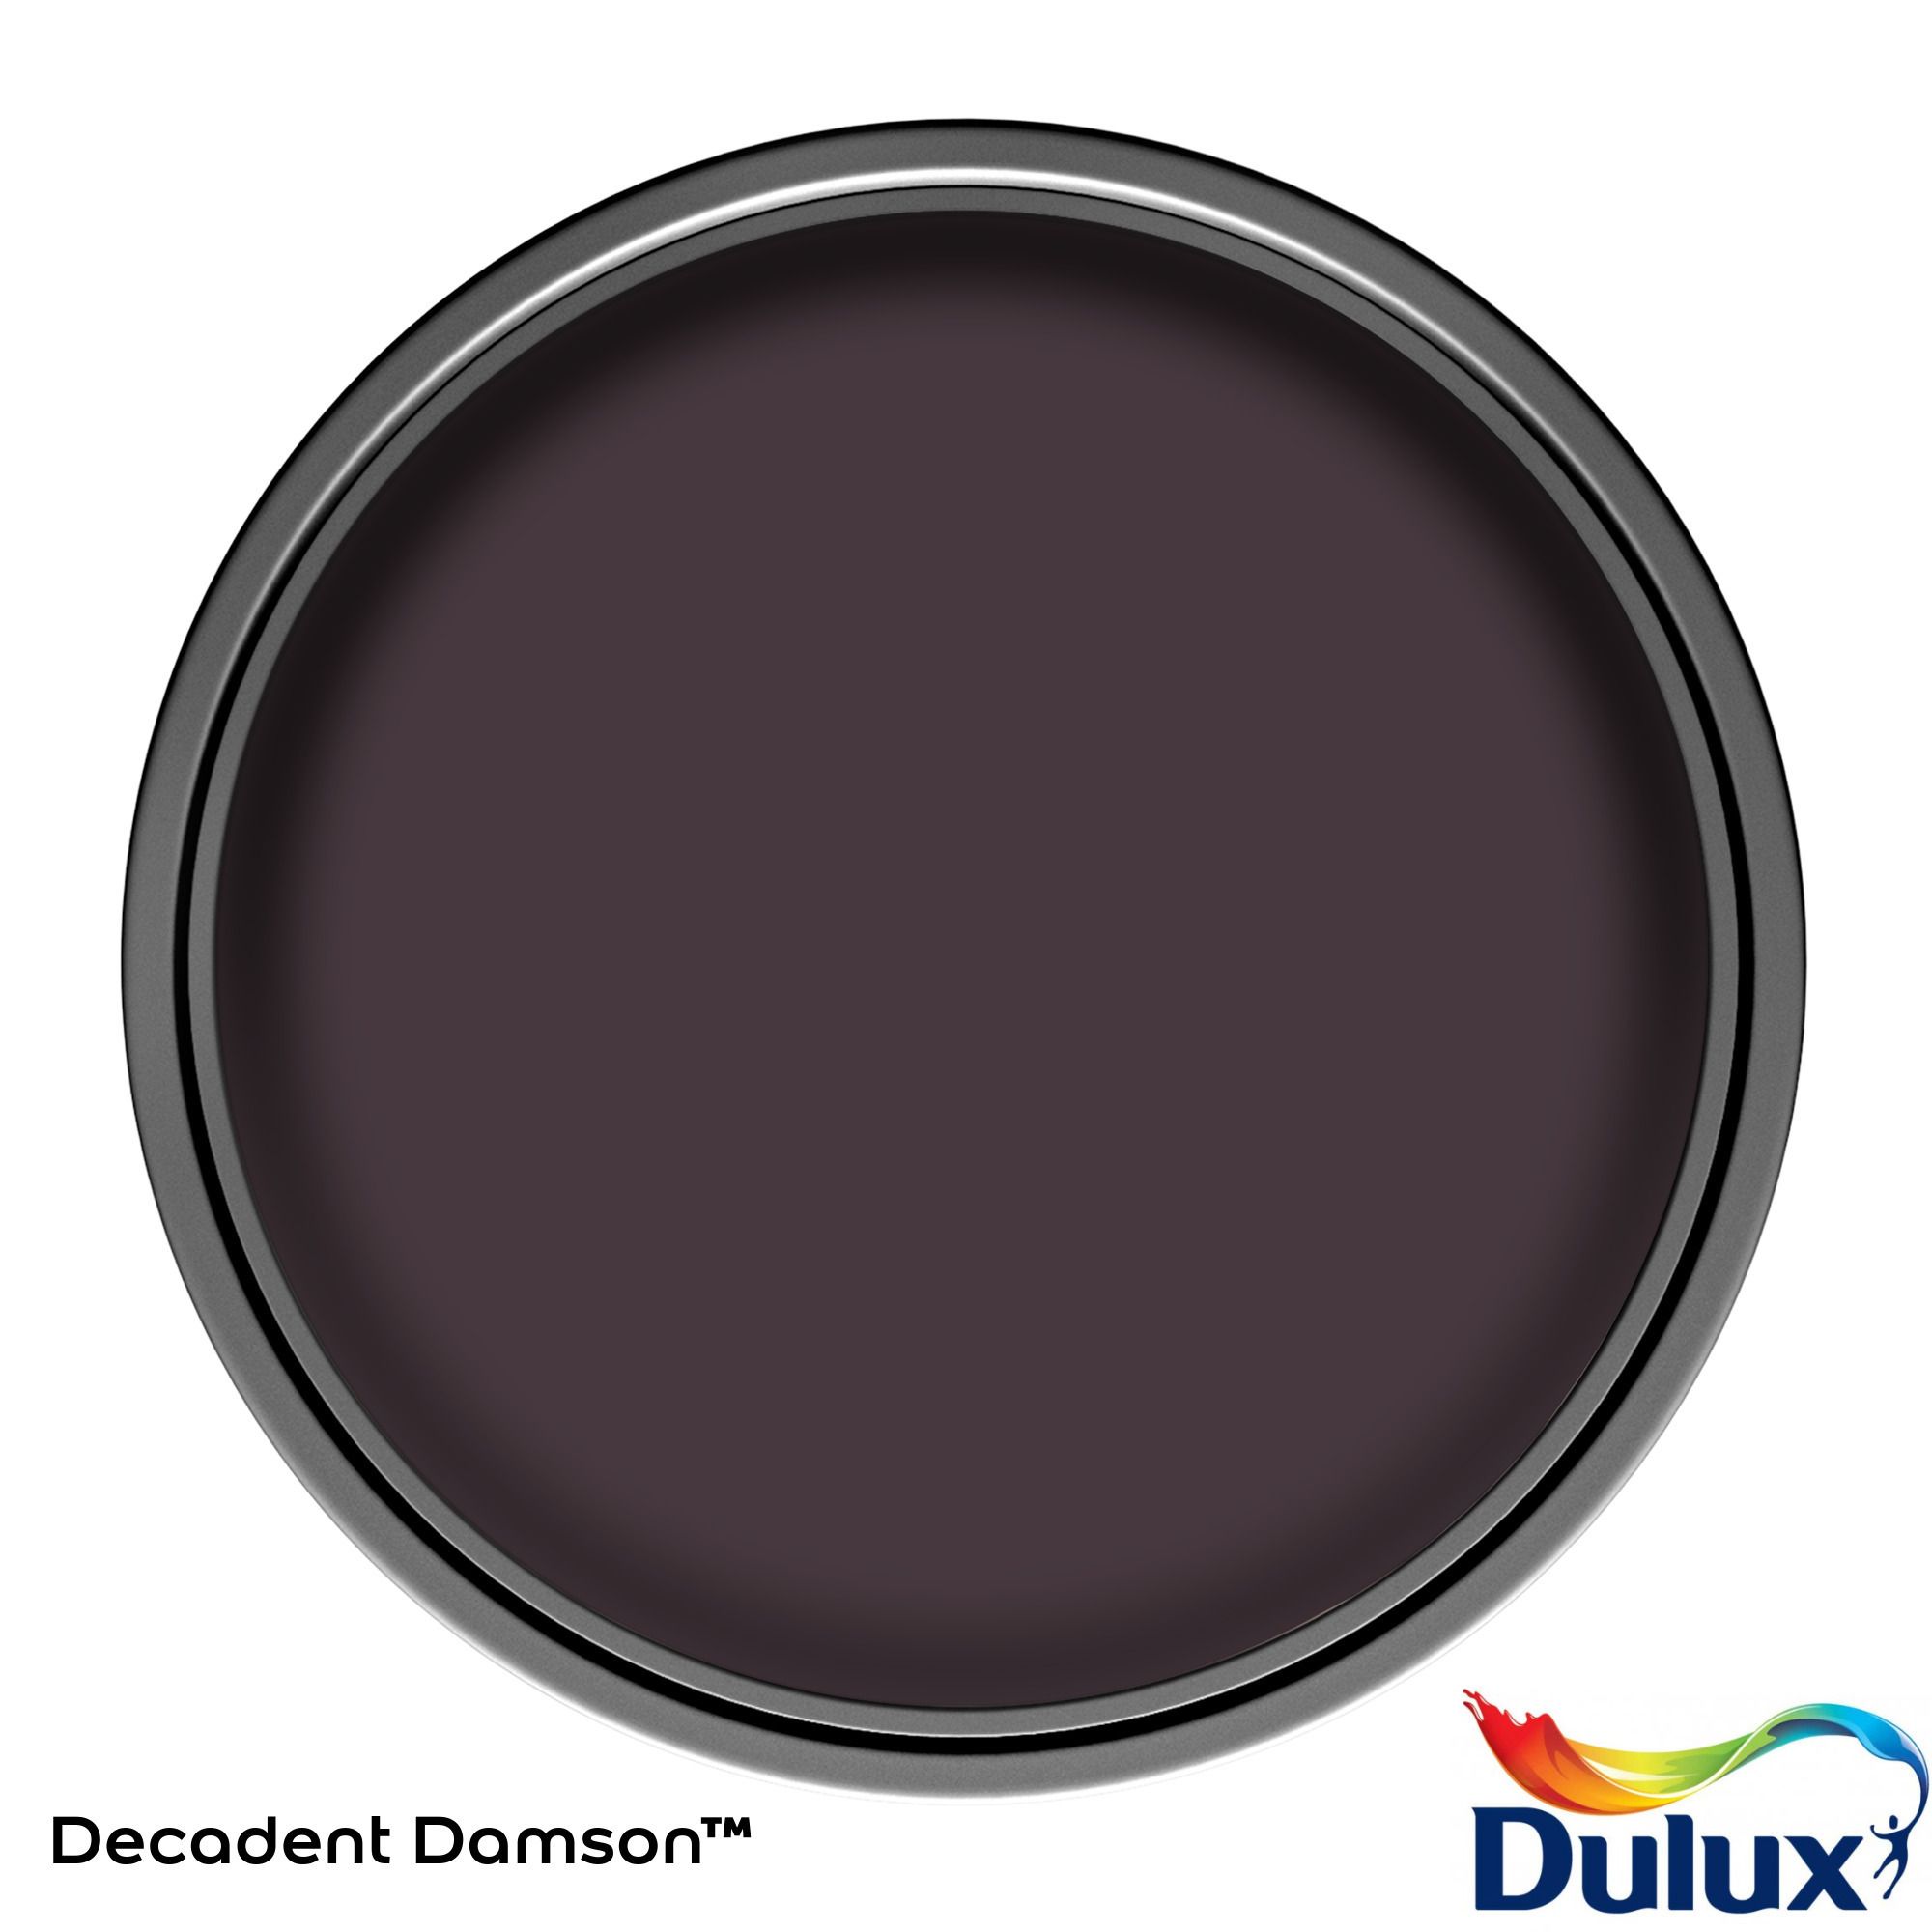 Dulux Easycare Decadent Damson Matt Wall paint, 2.5L